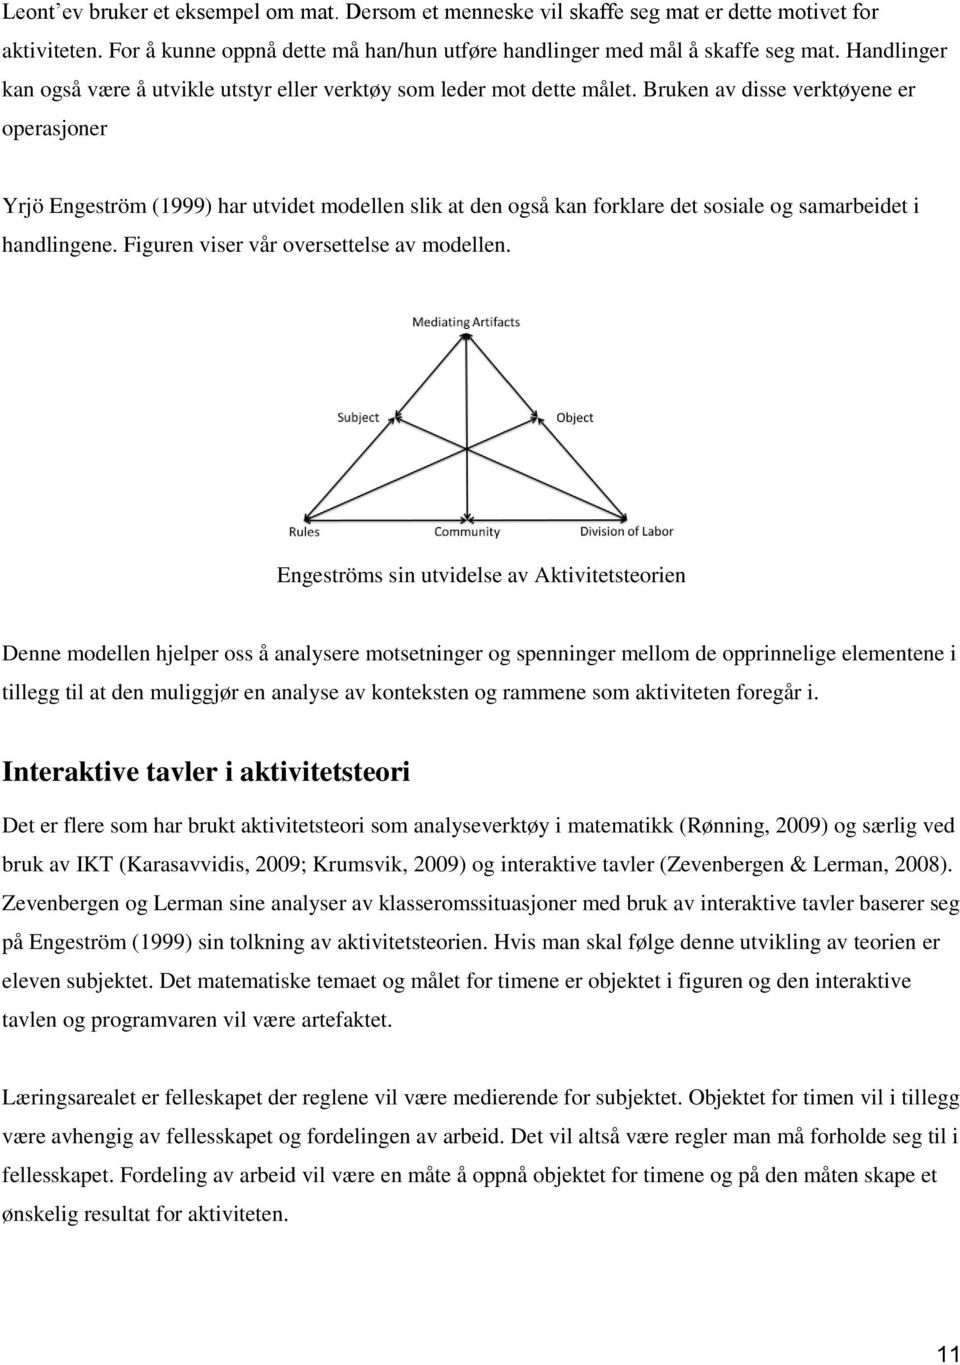 Bruken av disse verktøyene er operasjoner Yrjö Engeström (1999) har utvidet modellen slik at den også kan forklare det sosiale og samarbeidet i handlingene. Figuren viser vår oversettelse av modellen.